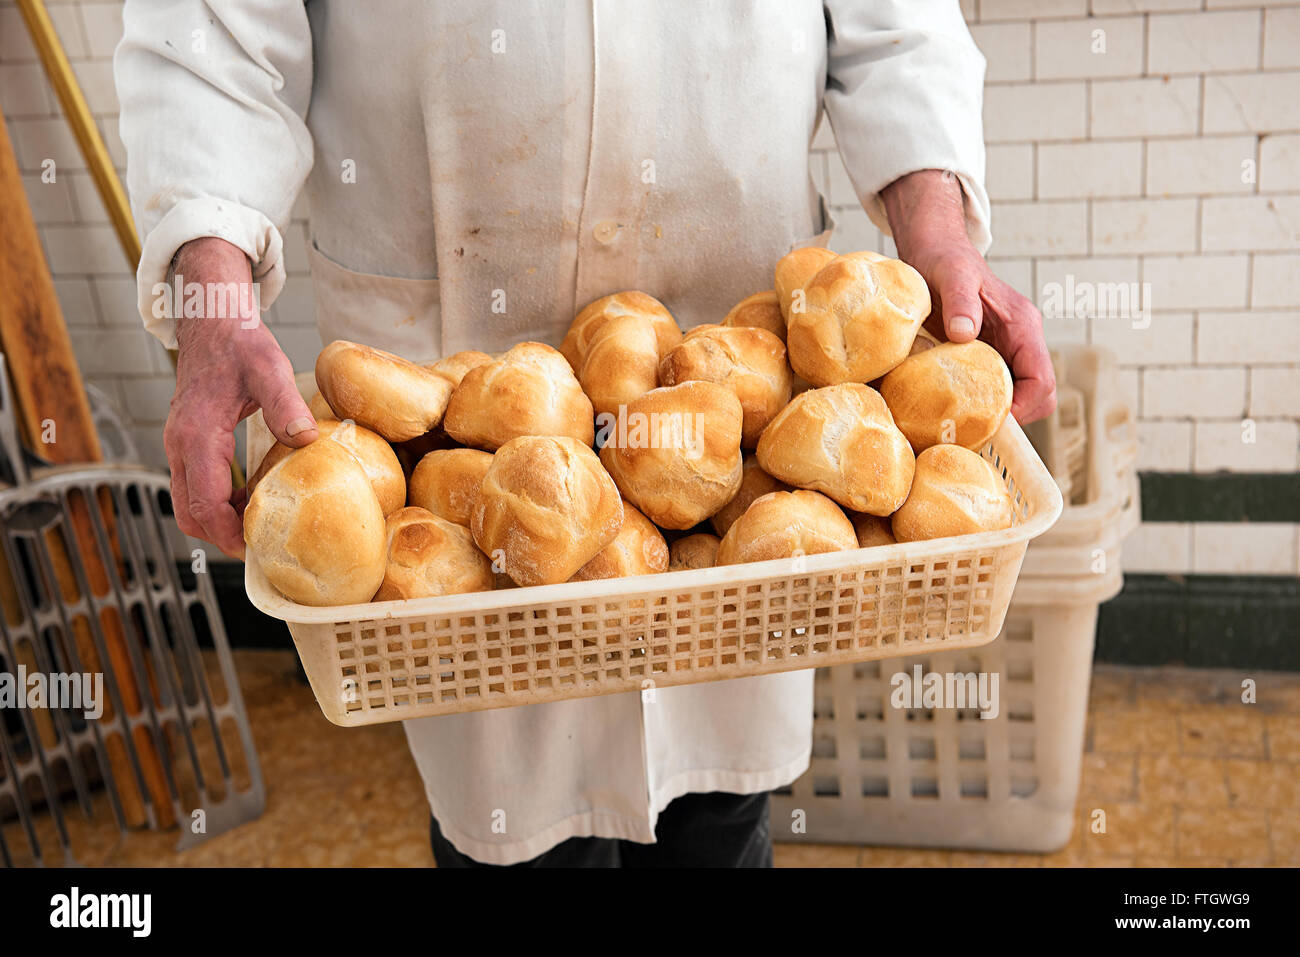 Baker, die holding eines Korb voll frisch gebackenes knuspriges Weißbrot rollt in seinem weißen Kittel in der Bäckerei Stockfoto